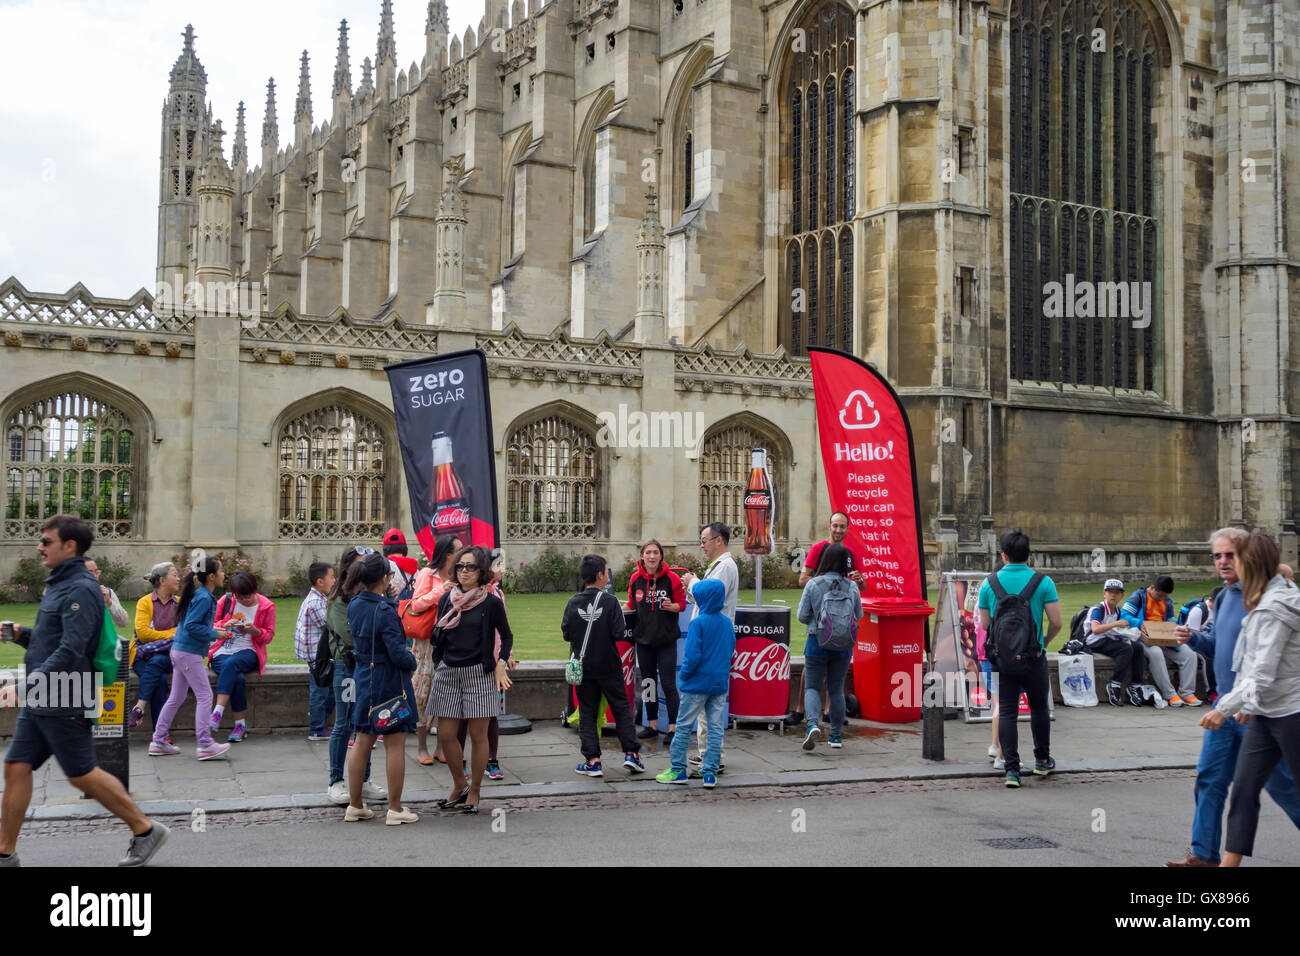 Las personas que promueven la venta de azúcar cero Coca Cola en Reyes desfilan delante de Kings College, con la capilla de los Reyes, detrás de la ciudad de Cambridge Foto de stock